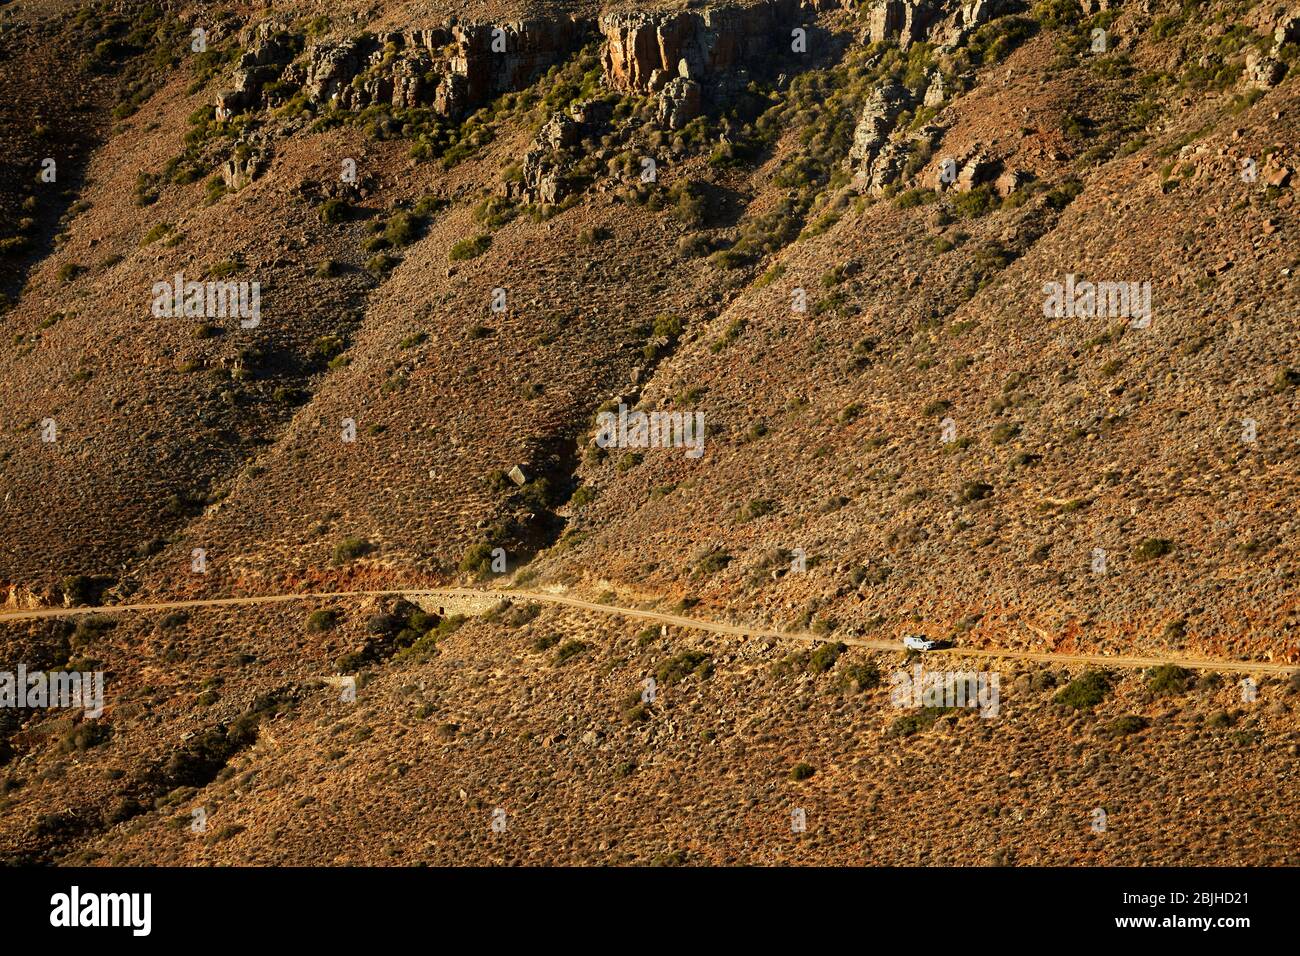 4x4 climbing Gannaga Pass, Tankwa Karoo National Park, South Africa Stock Photo